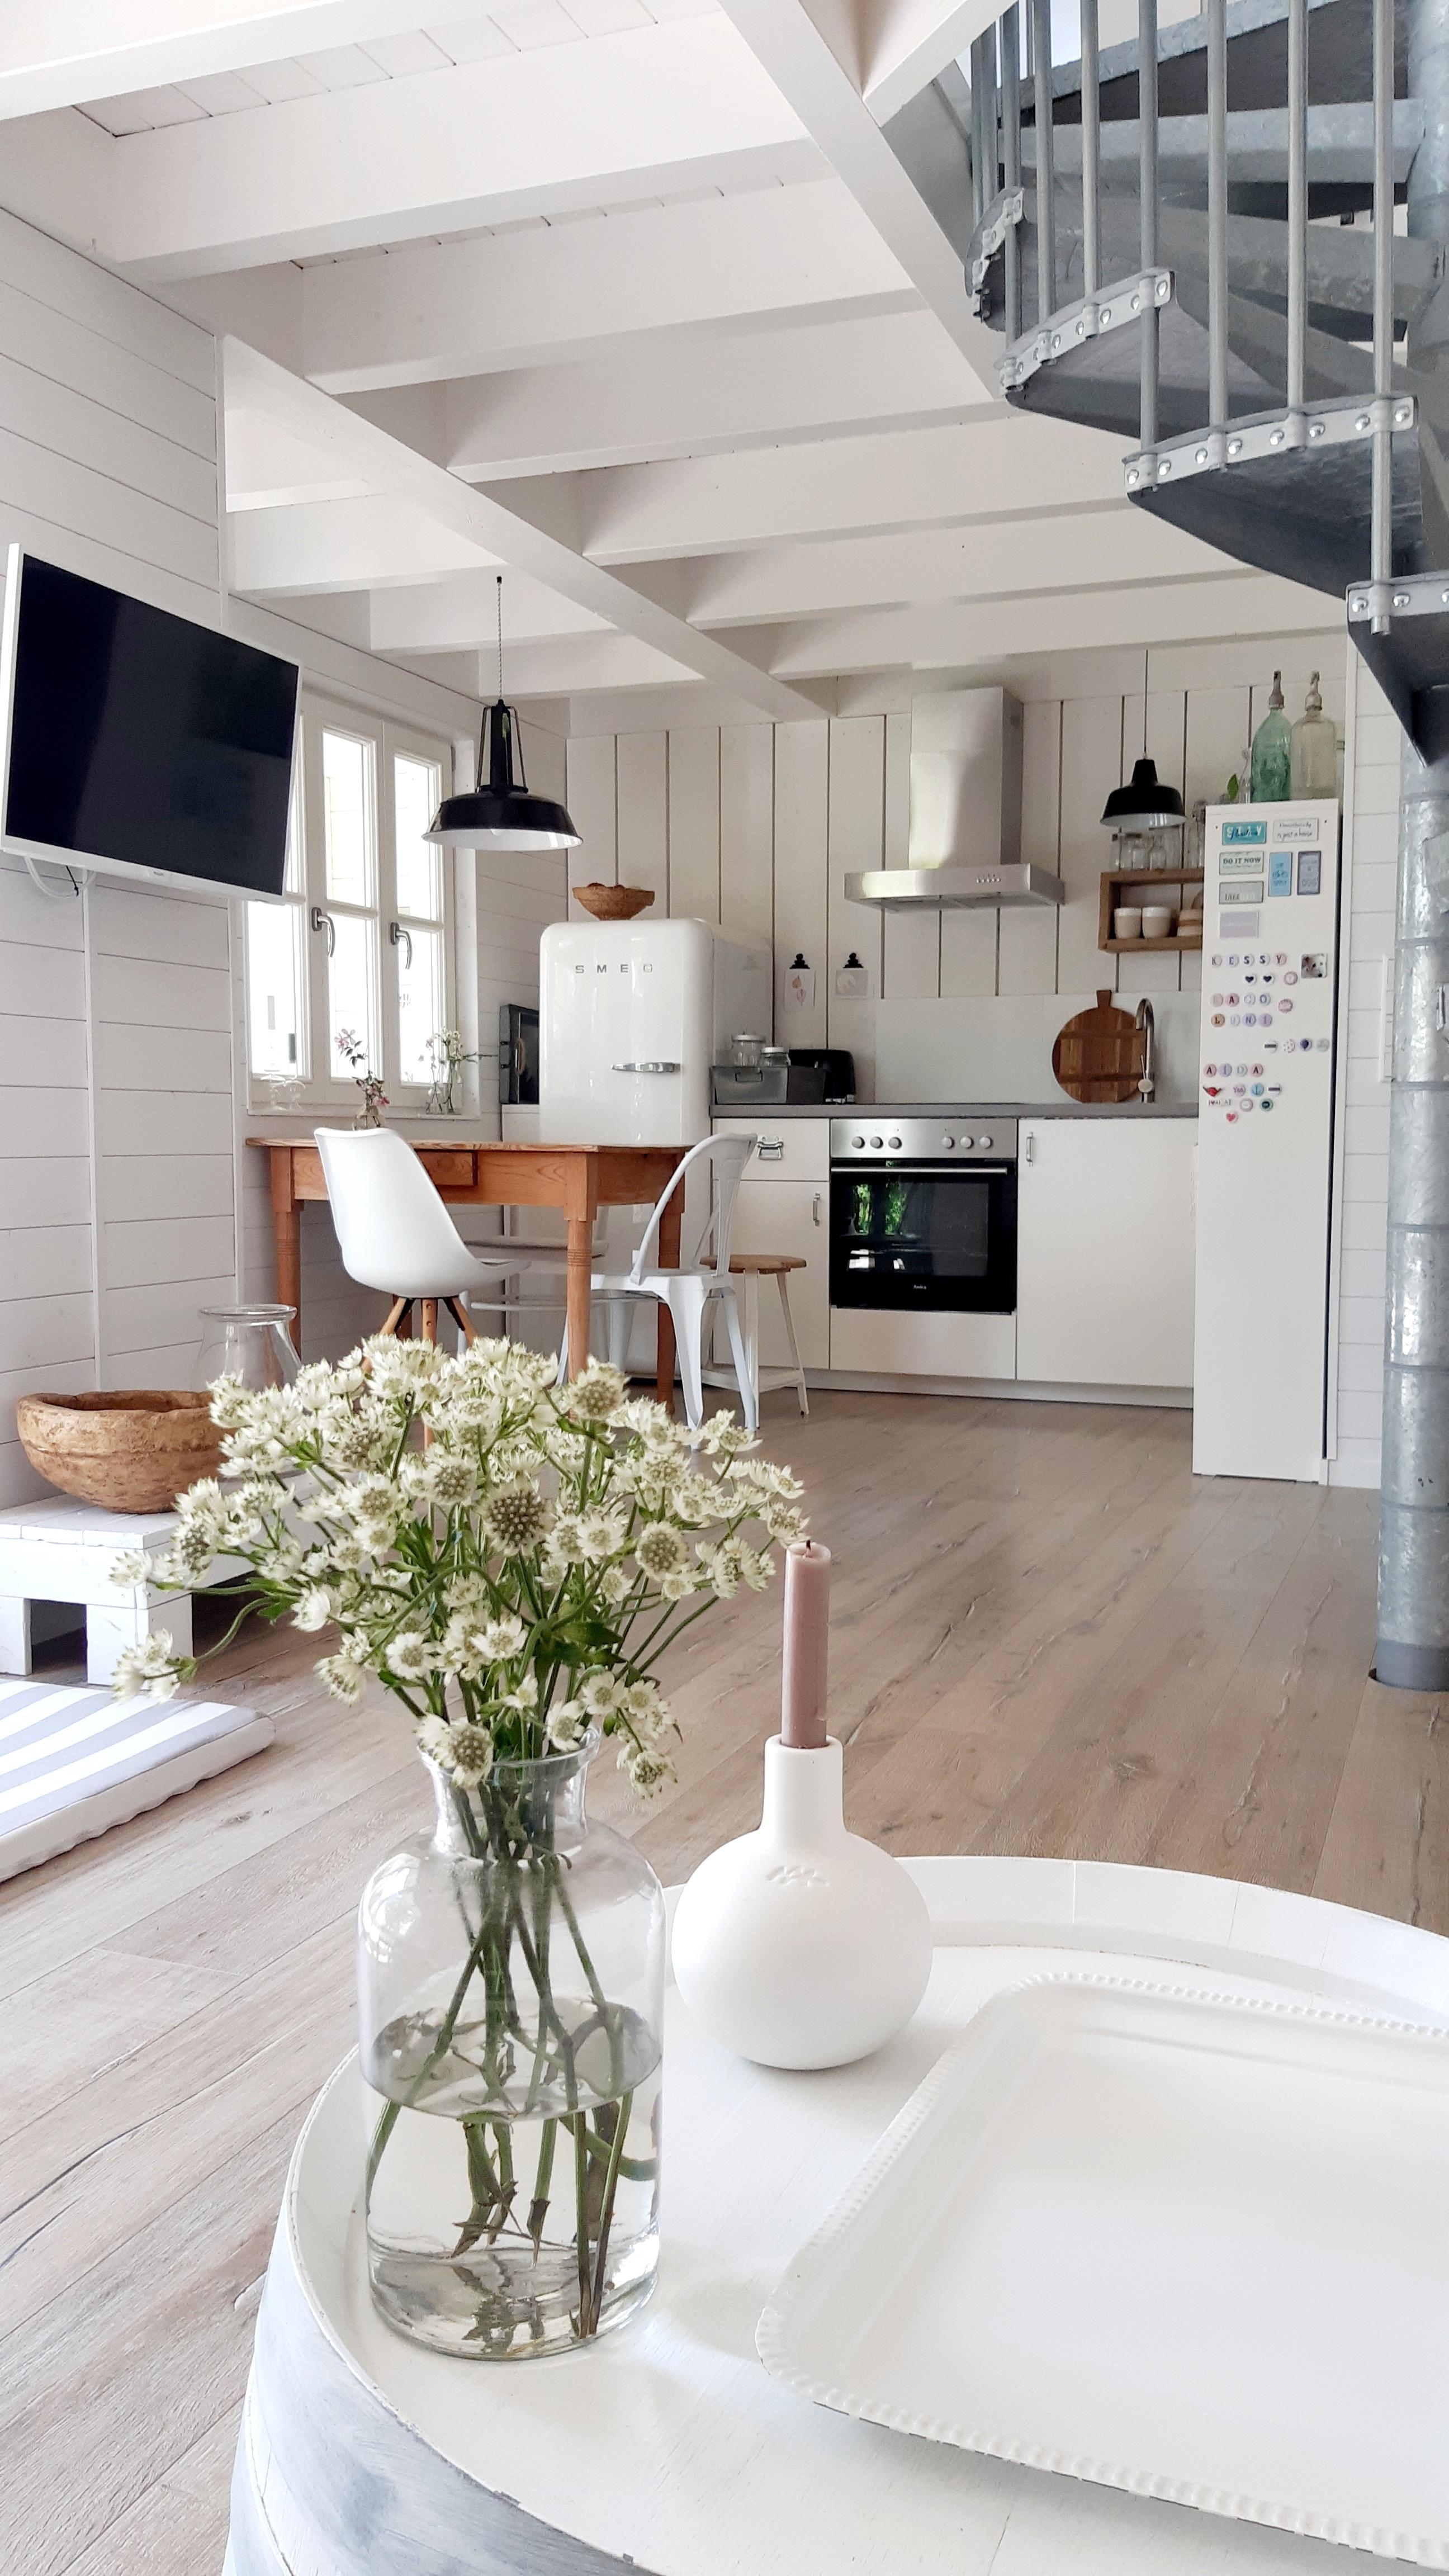 Liebe Grüße  und Blick in die Miniküche im Sommerhäuschen #interior #küche #holzhausliebe #whitelivinglovers 